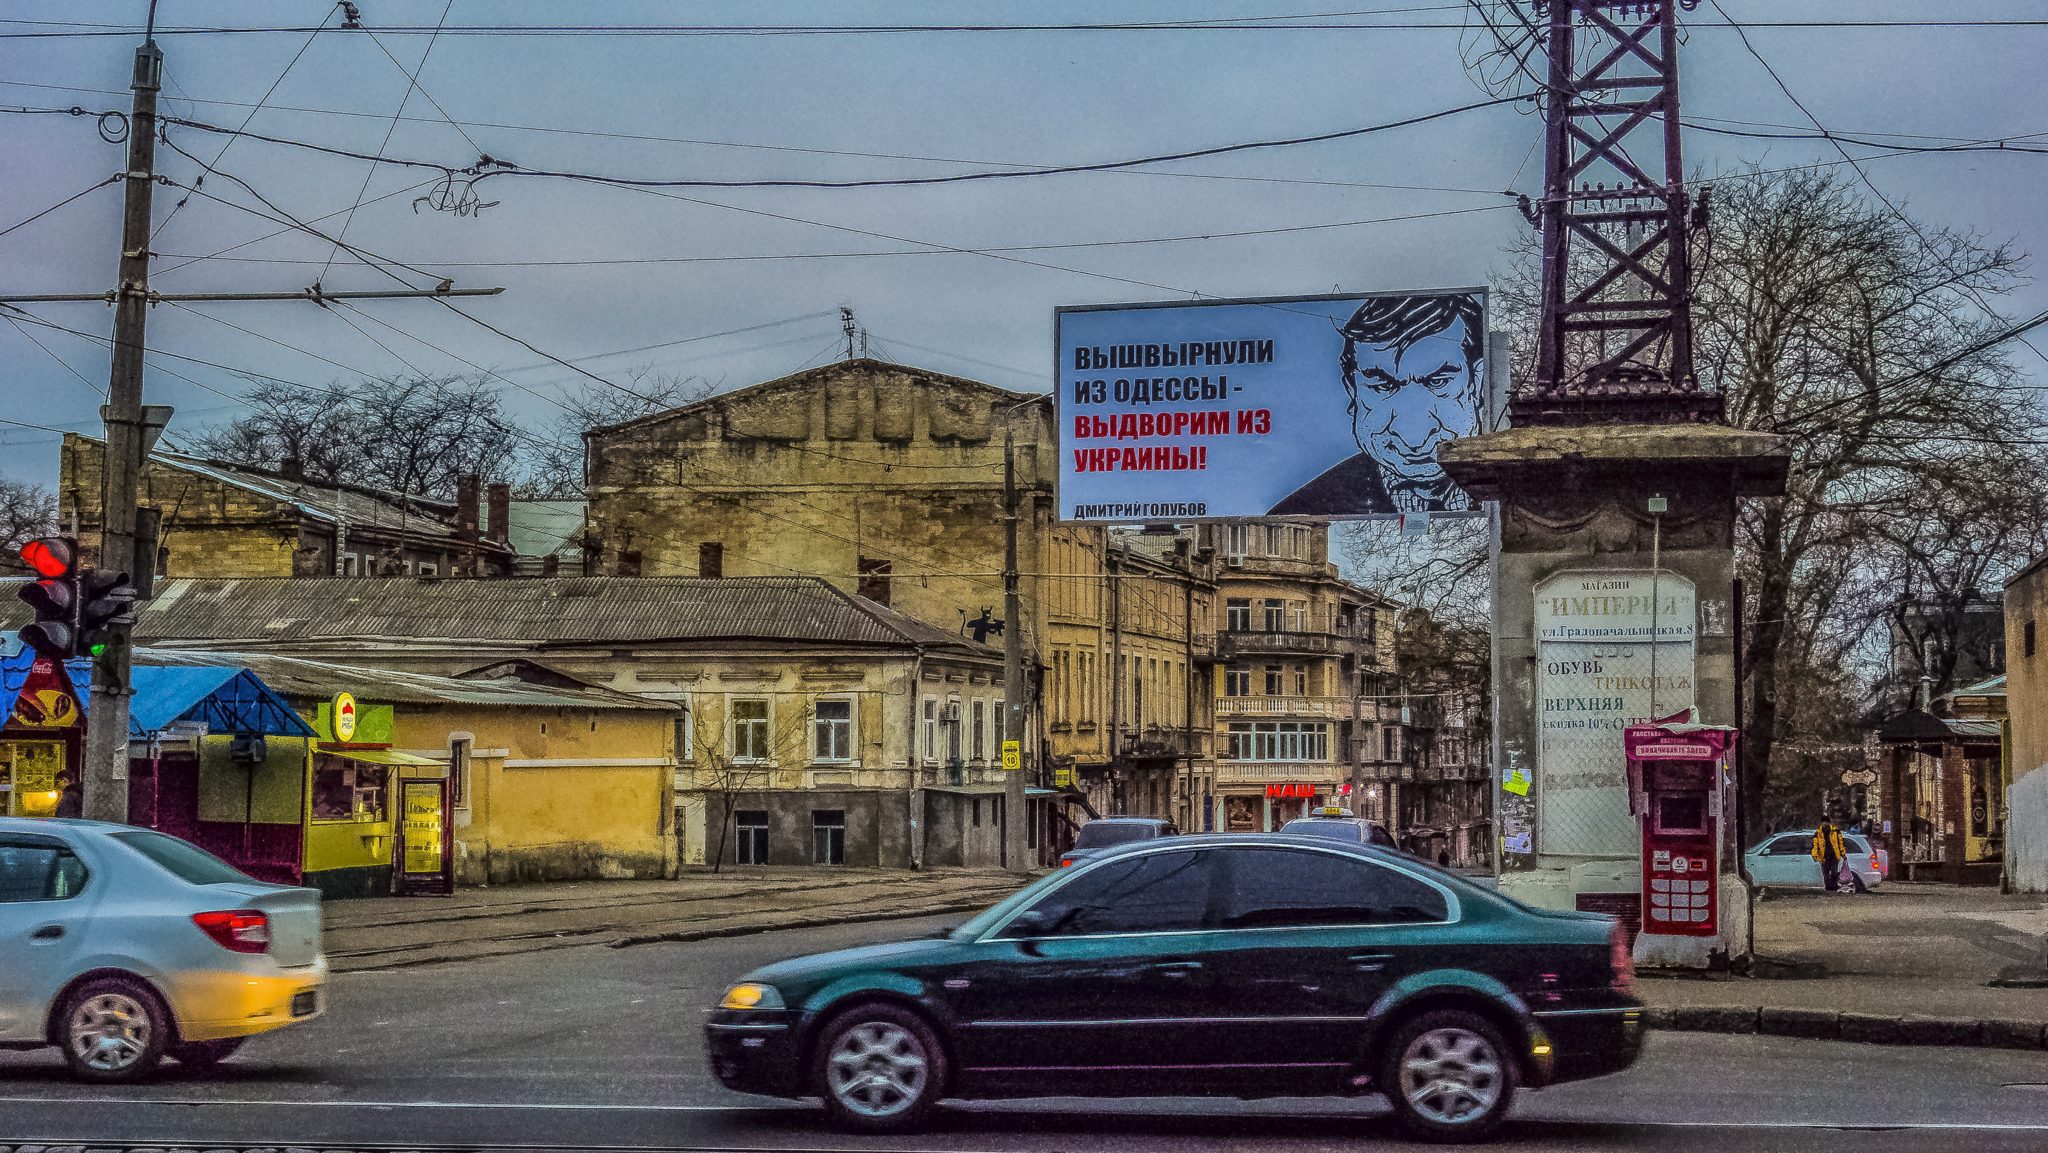 Reportage dall’Ucraina (I): un Paese in purgatorio